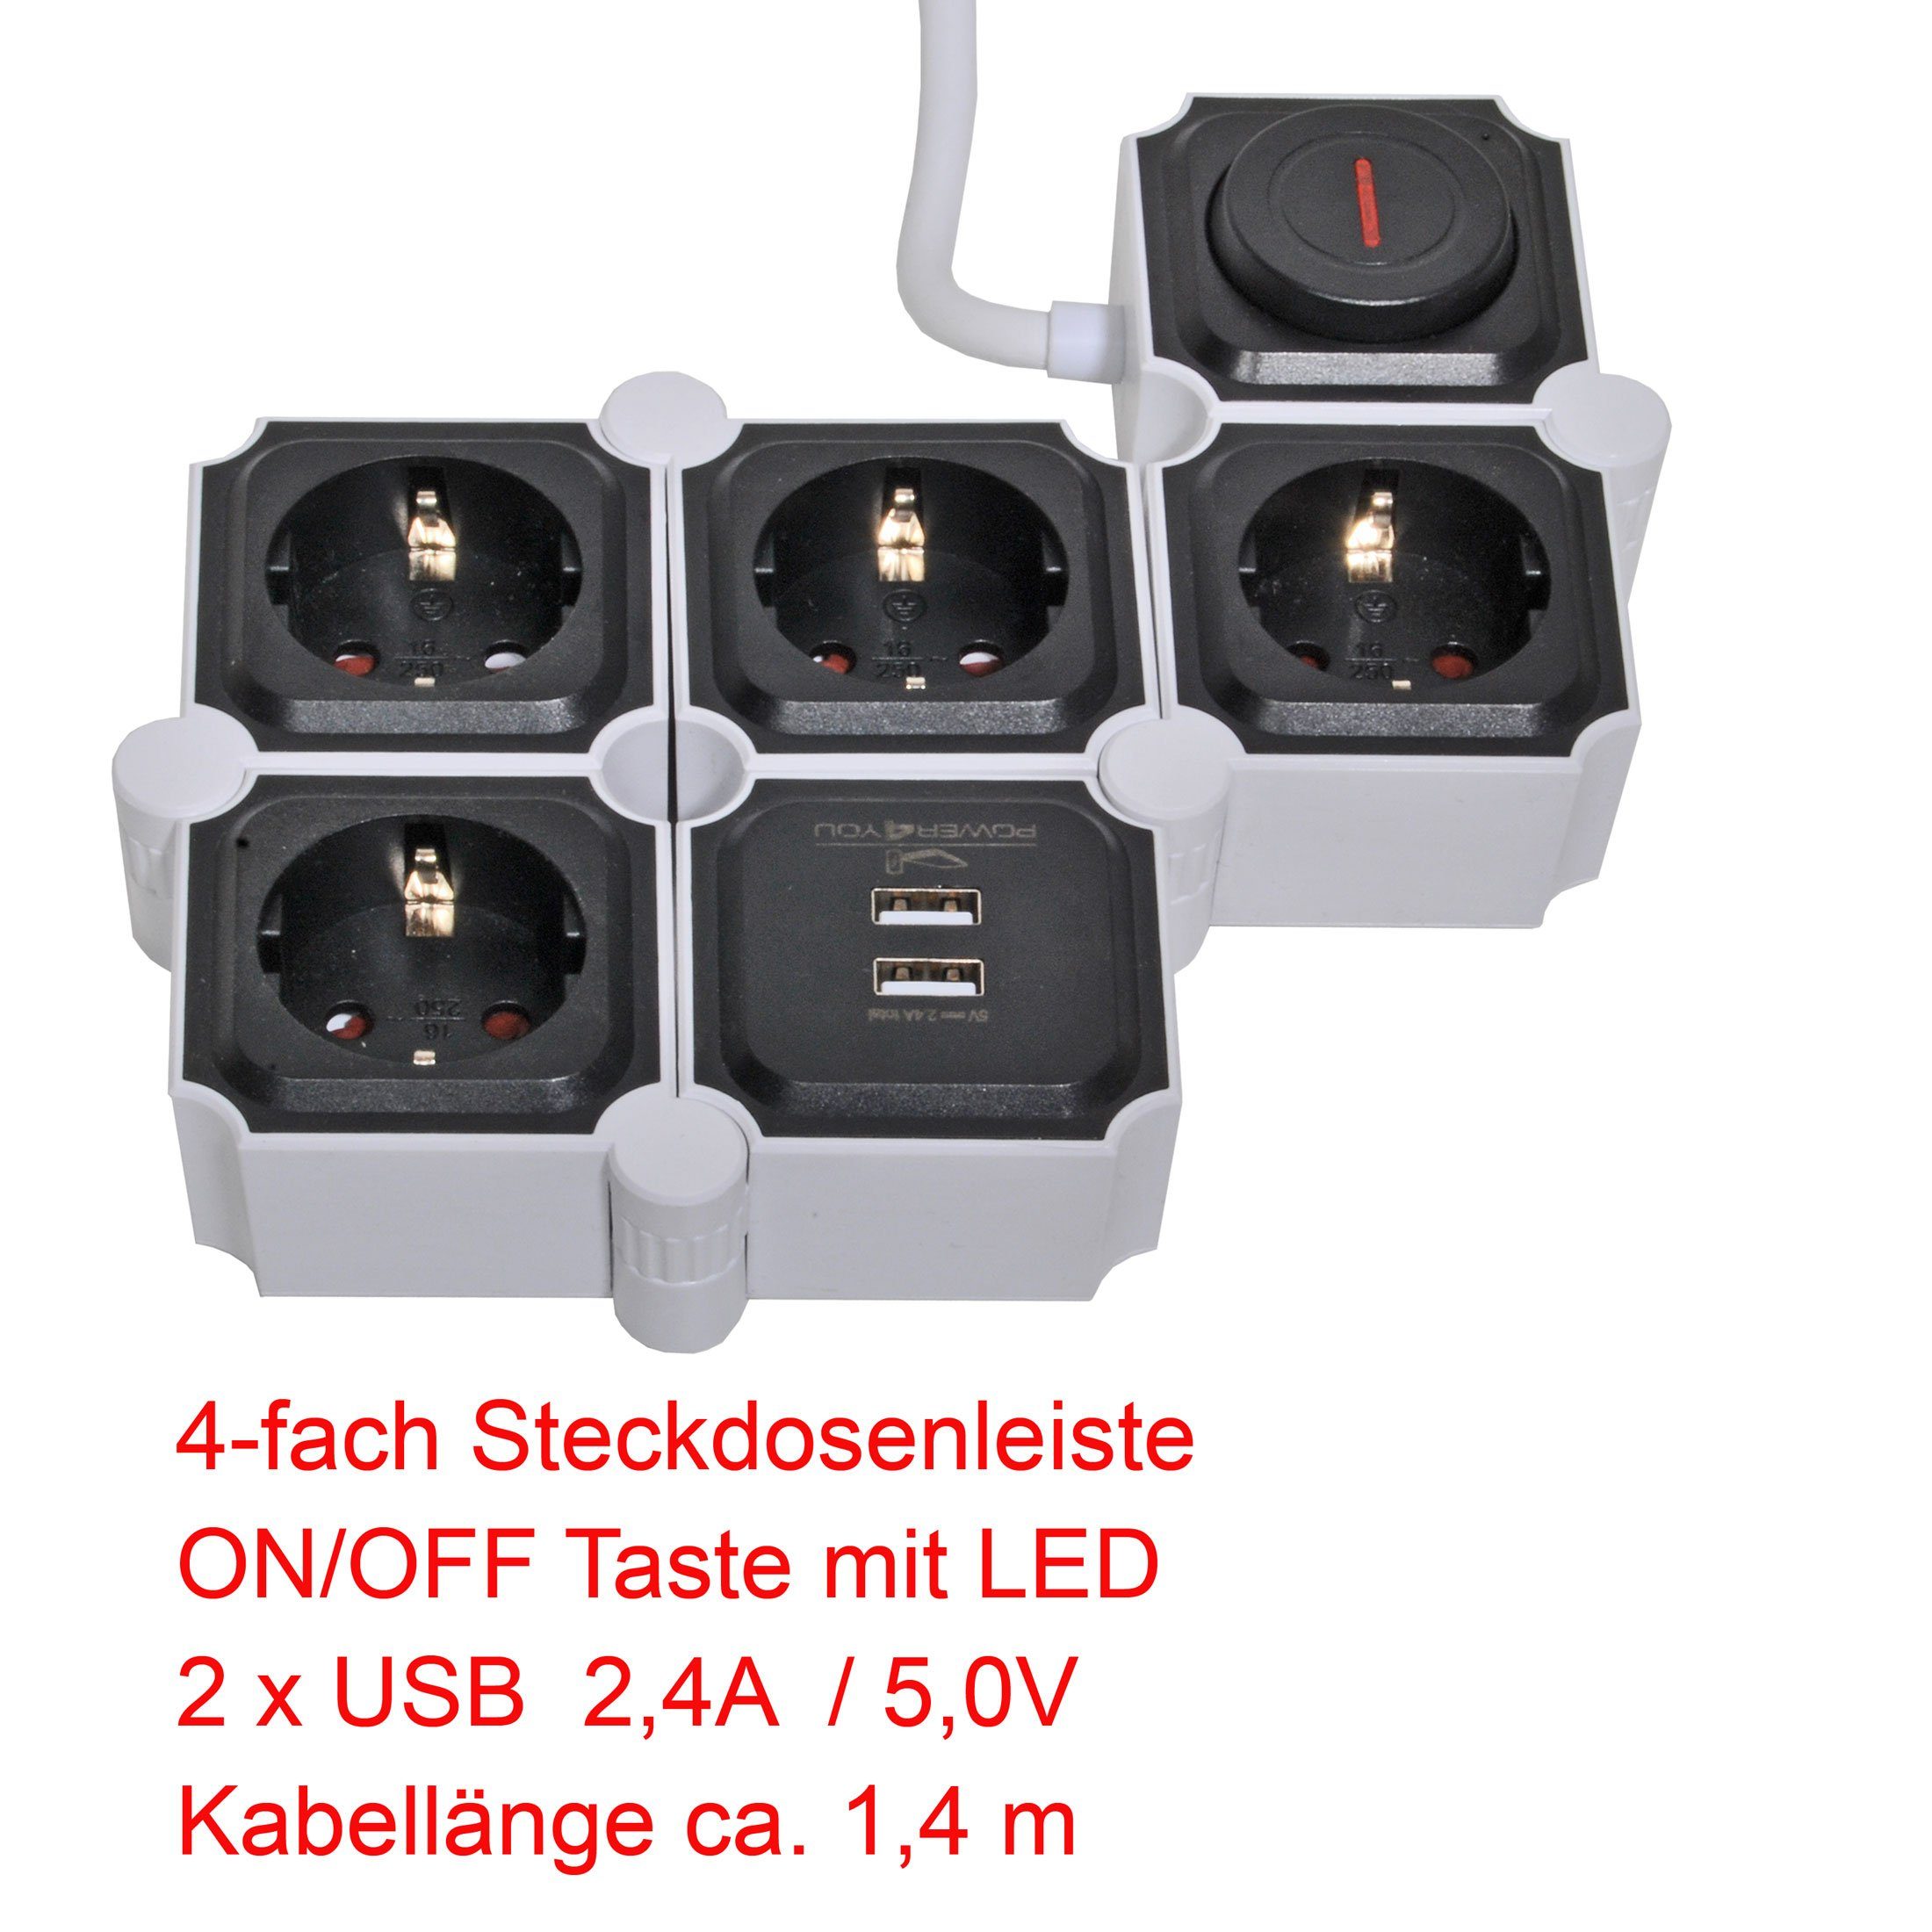 2 schwarz USB Steckdosenleiste x 2 Einsatz, Ein- (4,2A) (Ein- 12w kabel), Mehrfachstecker inkl. Schwaiger Ausschalter, separate Schalter Mehrfachsteckdose 4-fach 1,5M USB-Anschlüsse, / USB x Flexible Ausschalter, Schalterbeleuchtung, /